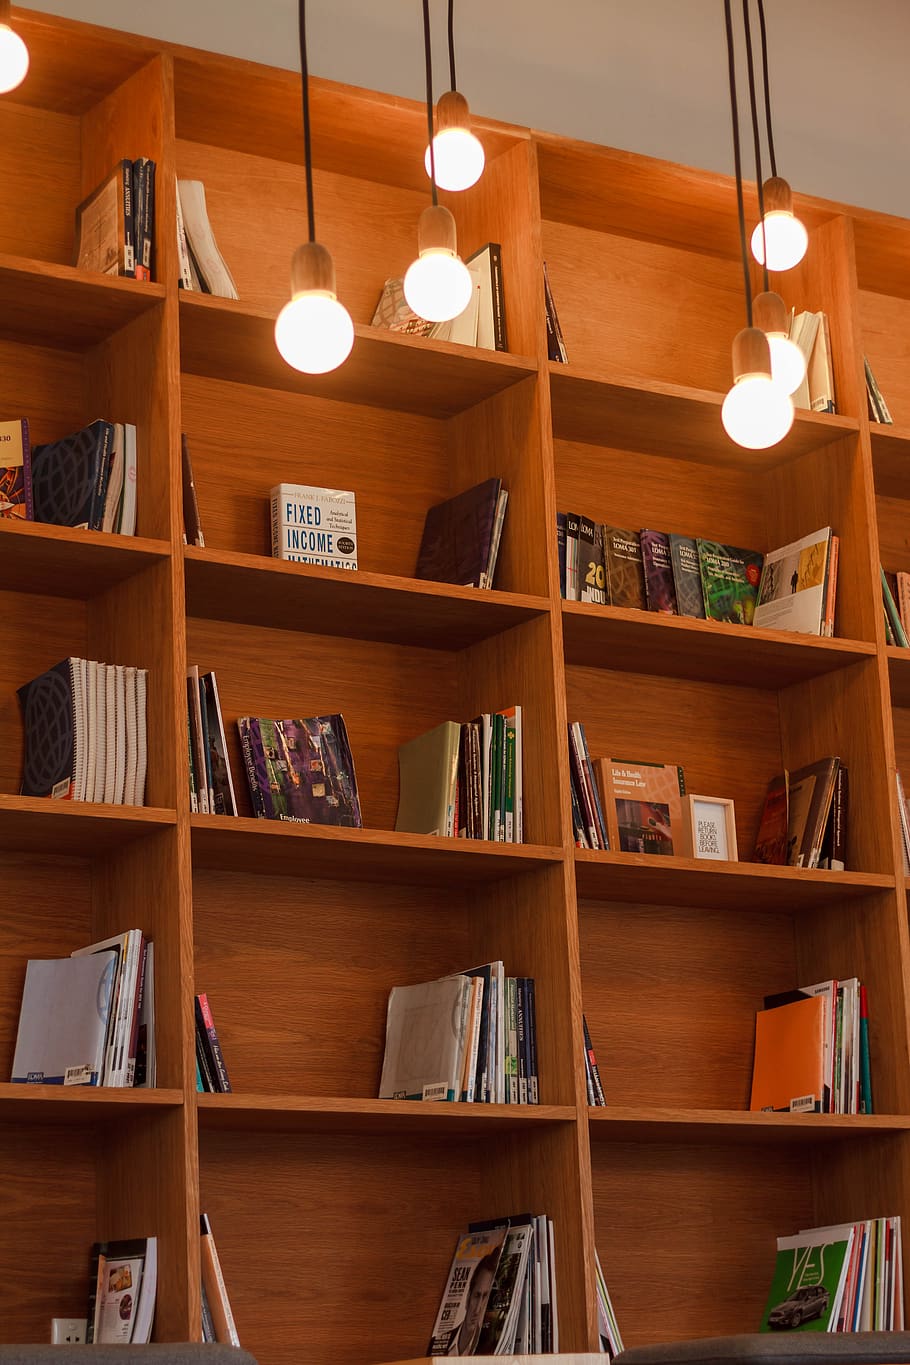 livro, estante, biblioteca, escola, educação, conhecimento, luz, lâmpada, prateleira, estante de livros